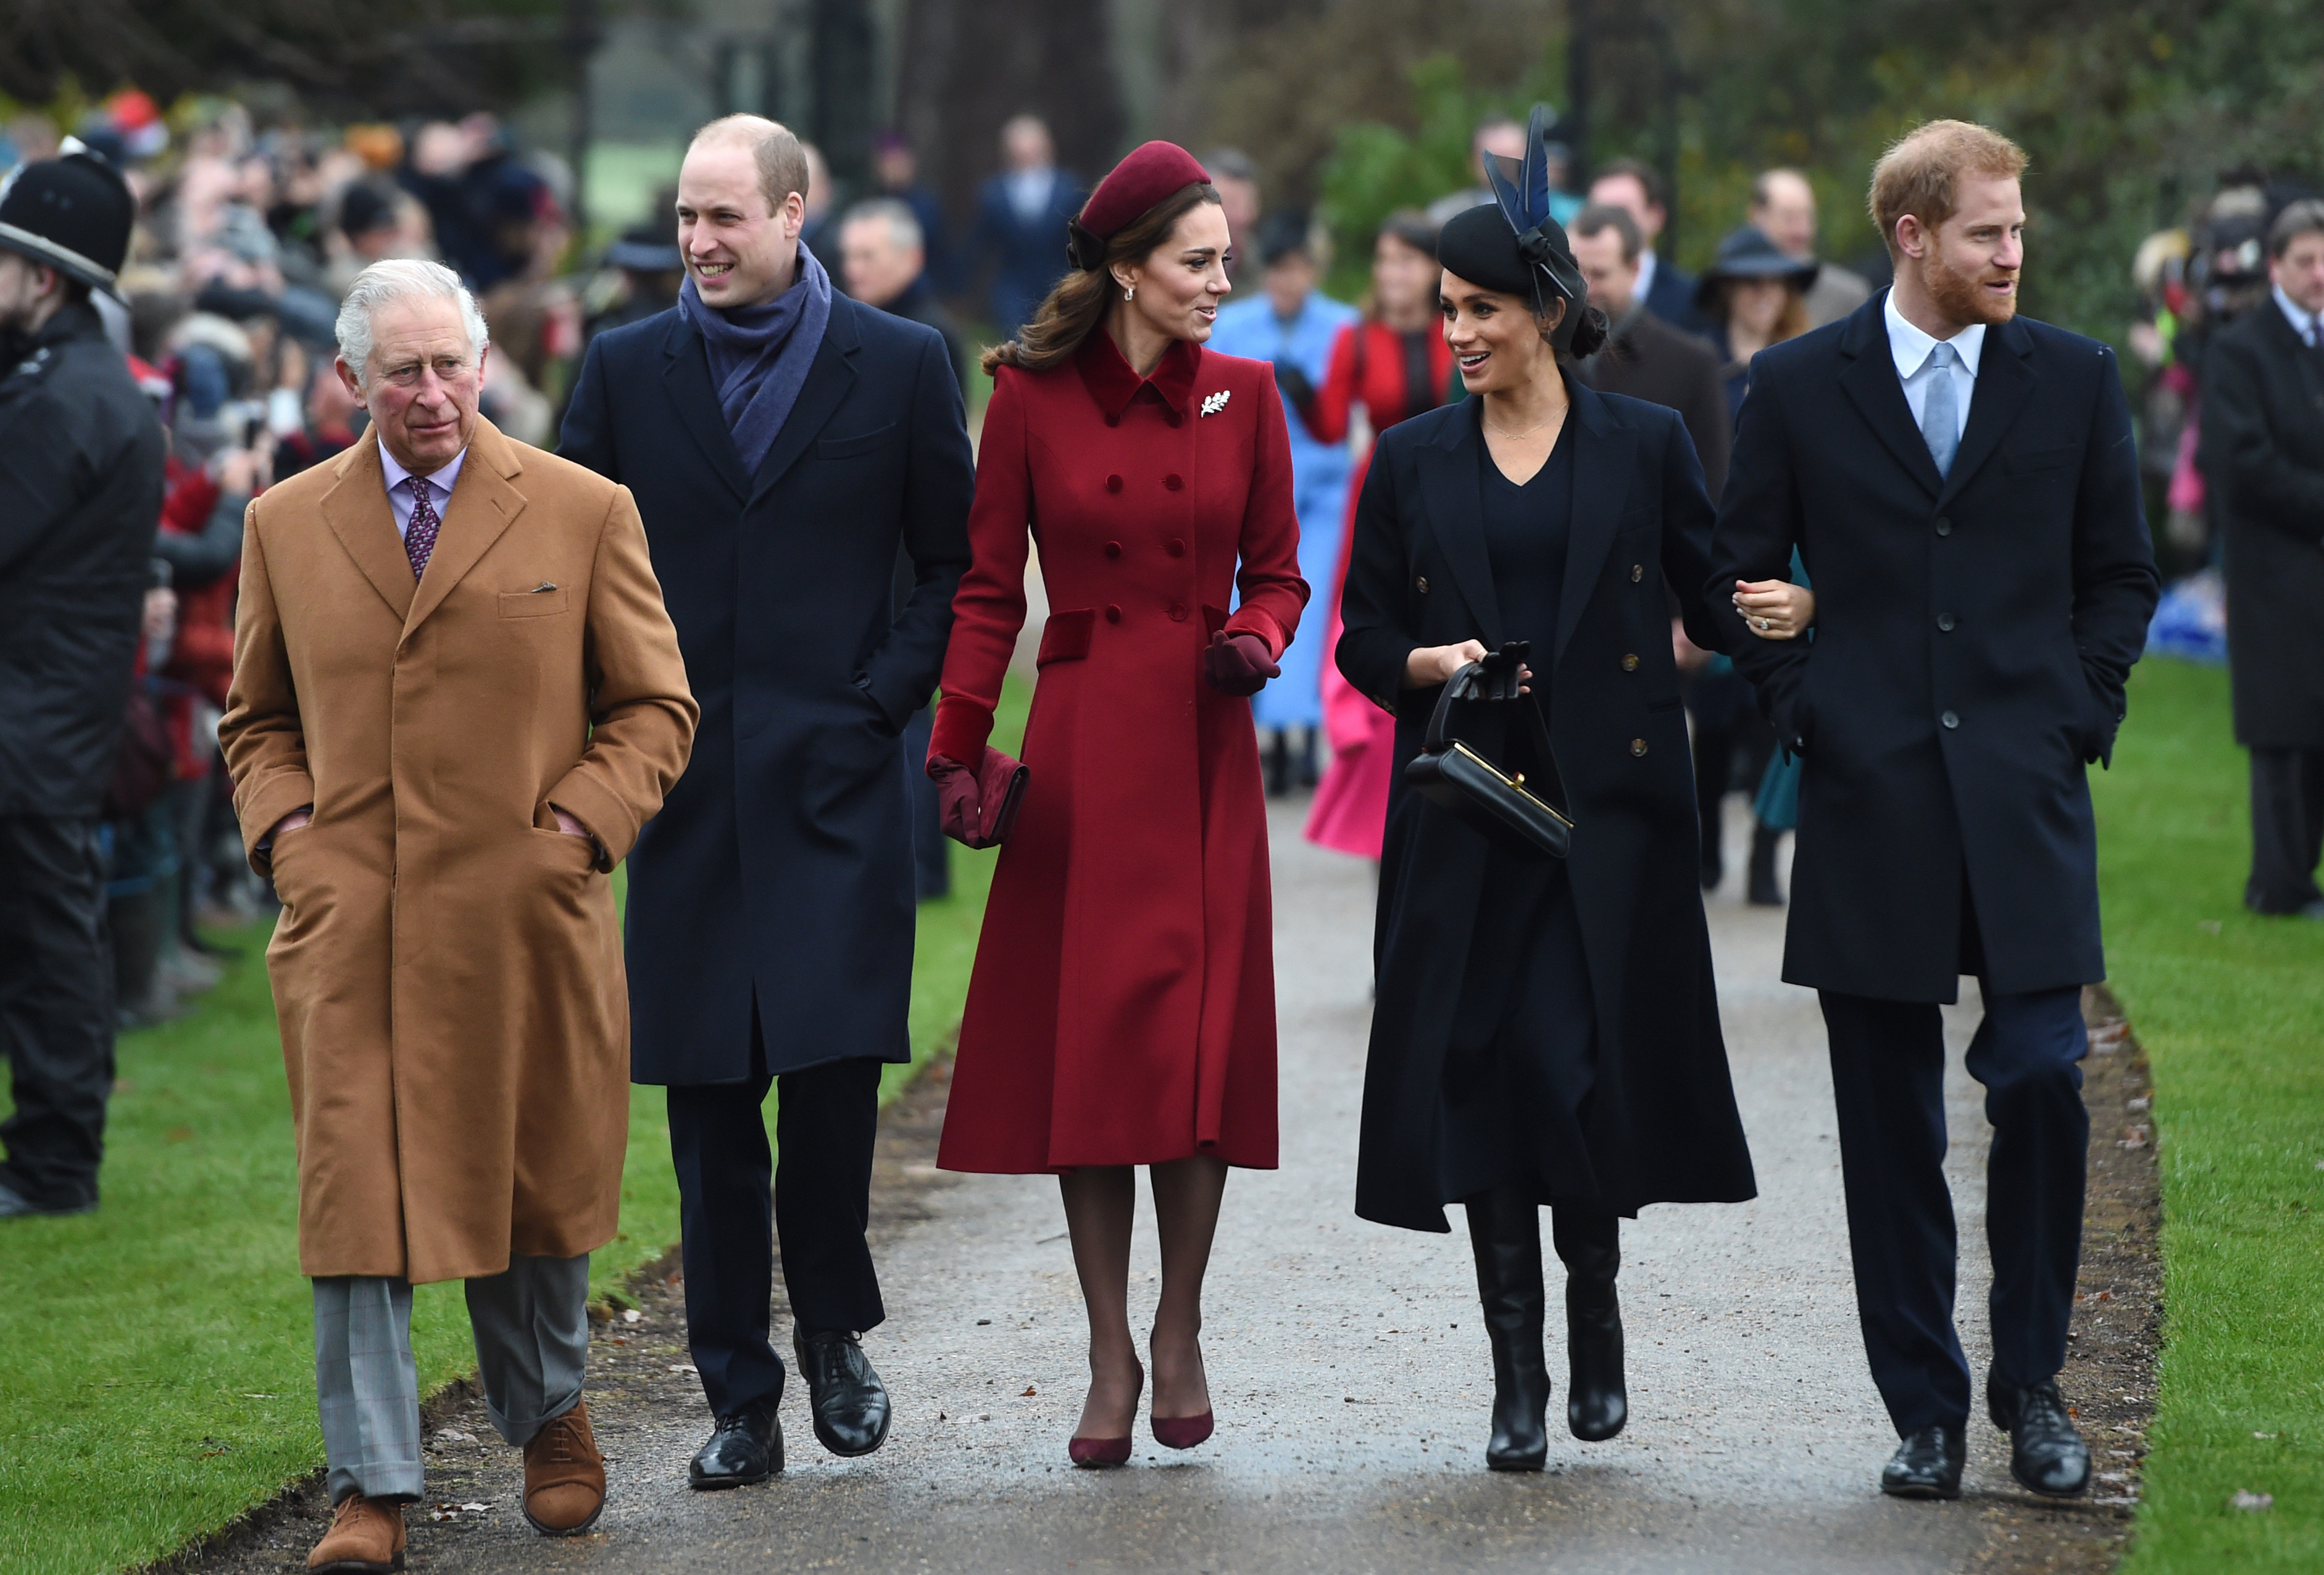 Kate a été désignée comme l'un des membres de la famille royale impliqués dans la querelle contre le racisme